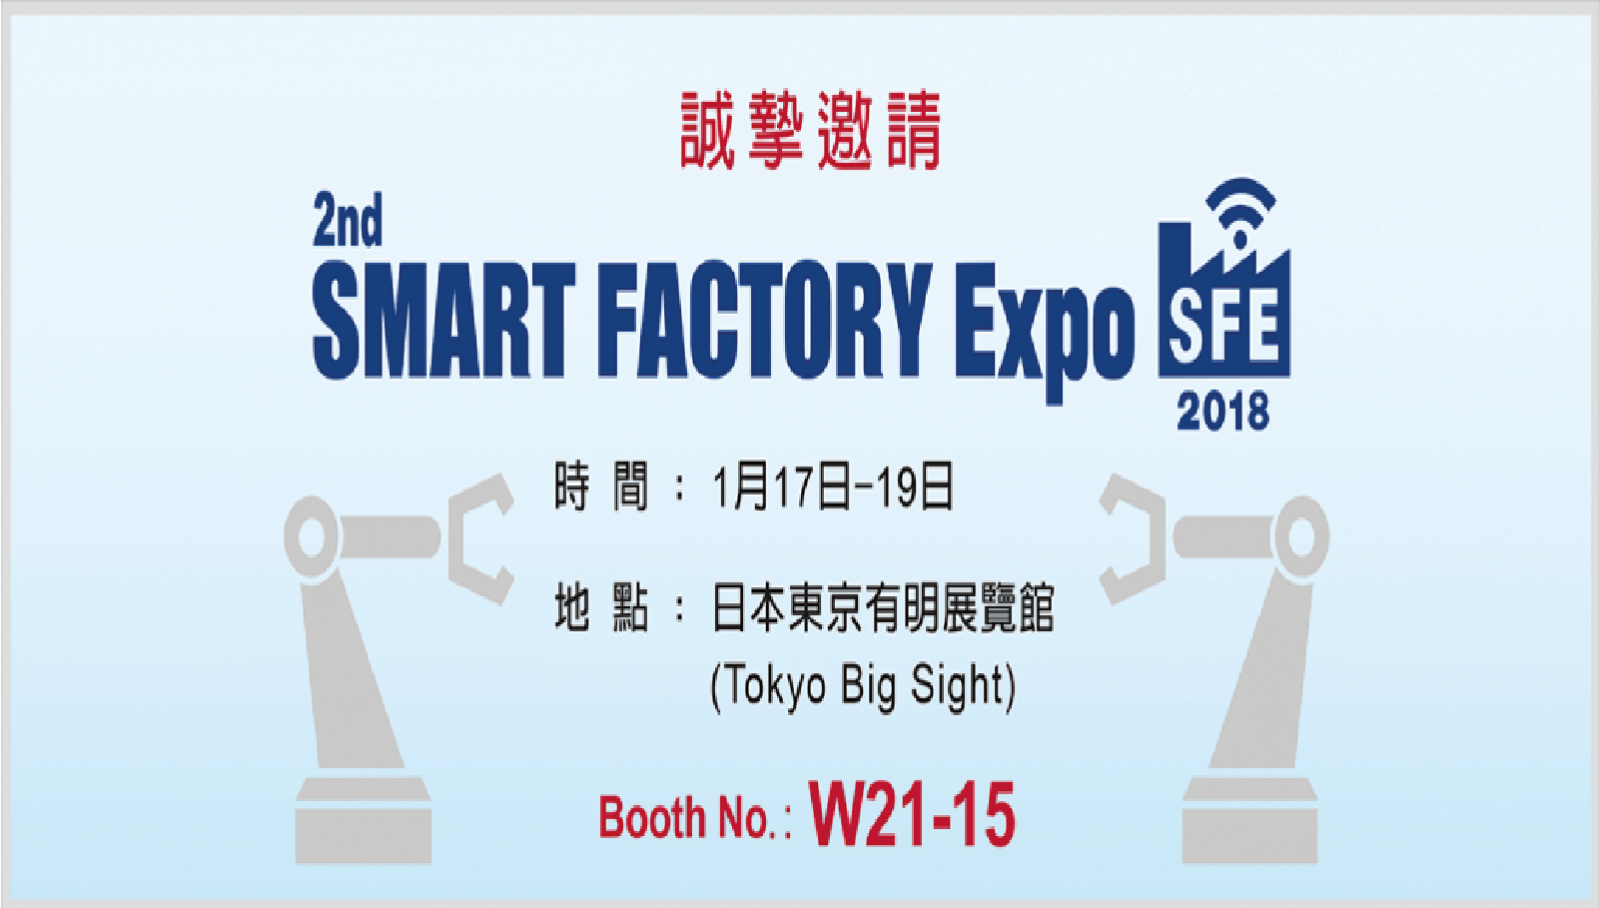 所羅門參展 Smart Factory Expo 2018